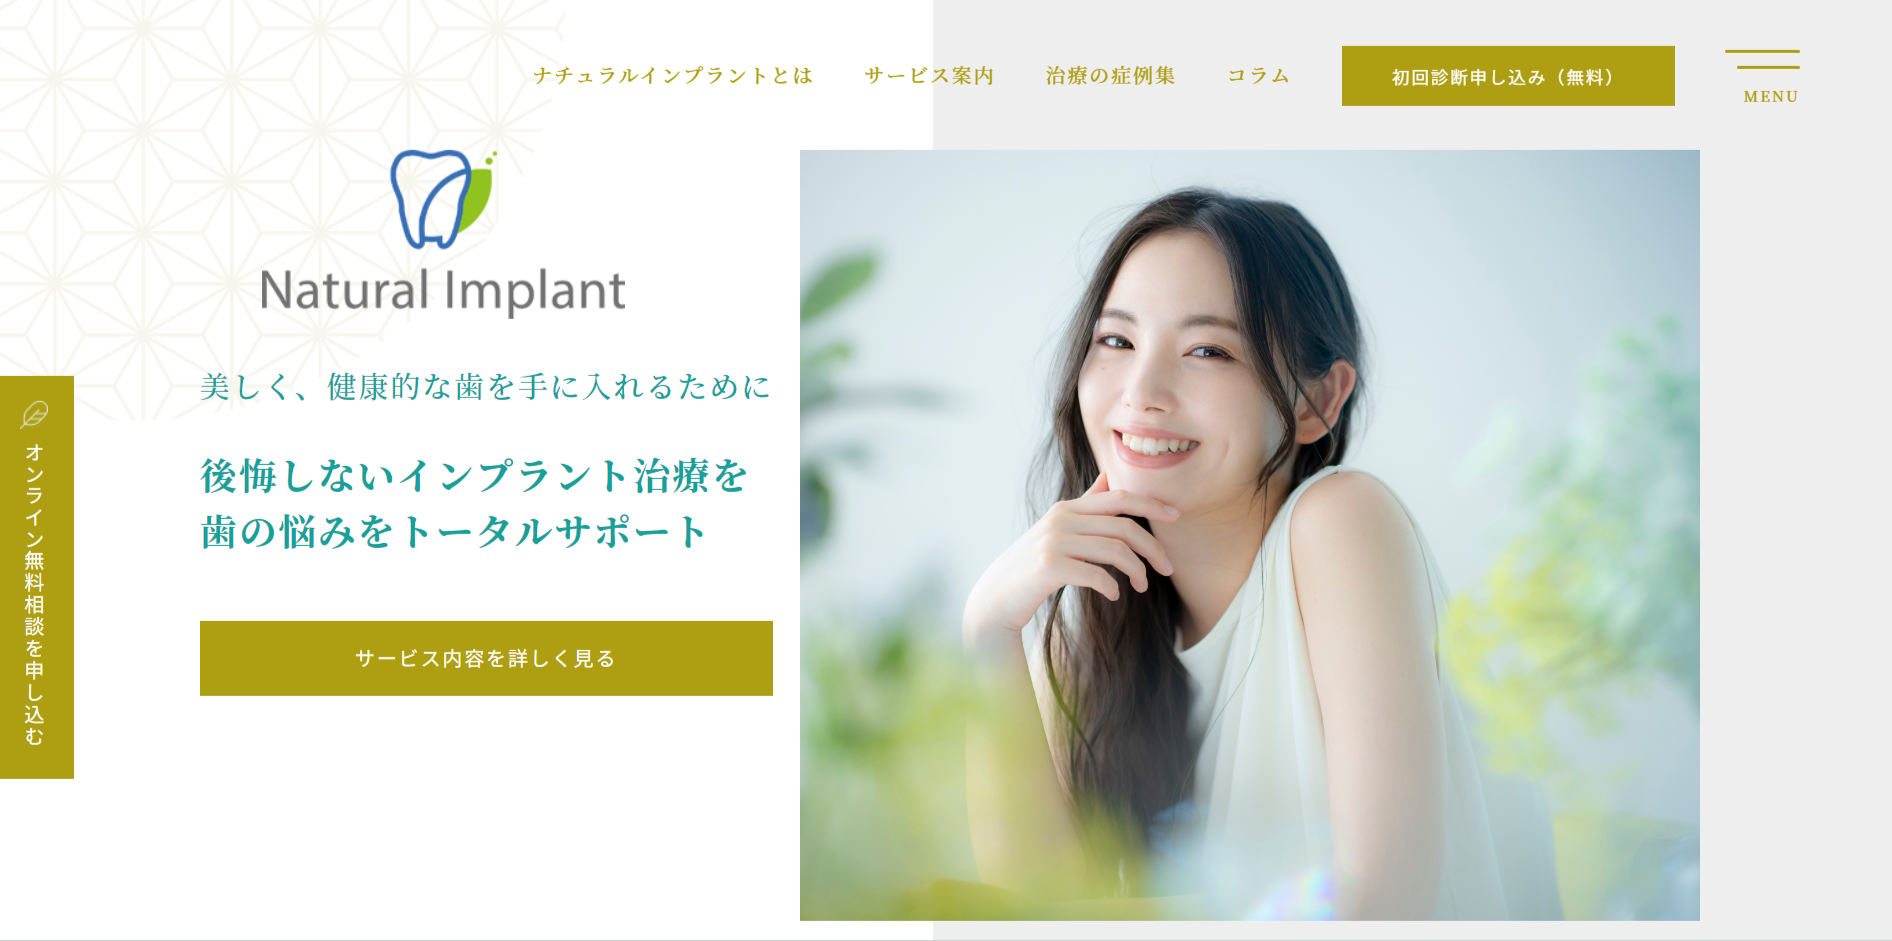 インプラント治療のサポート・サービス「Natural Implant（ナチュラルインプラント）」が仙台エリア限定のお得な企画キャンペーン開始、6月のセミナー参加者も募集開始